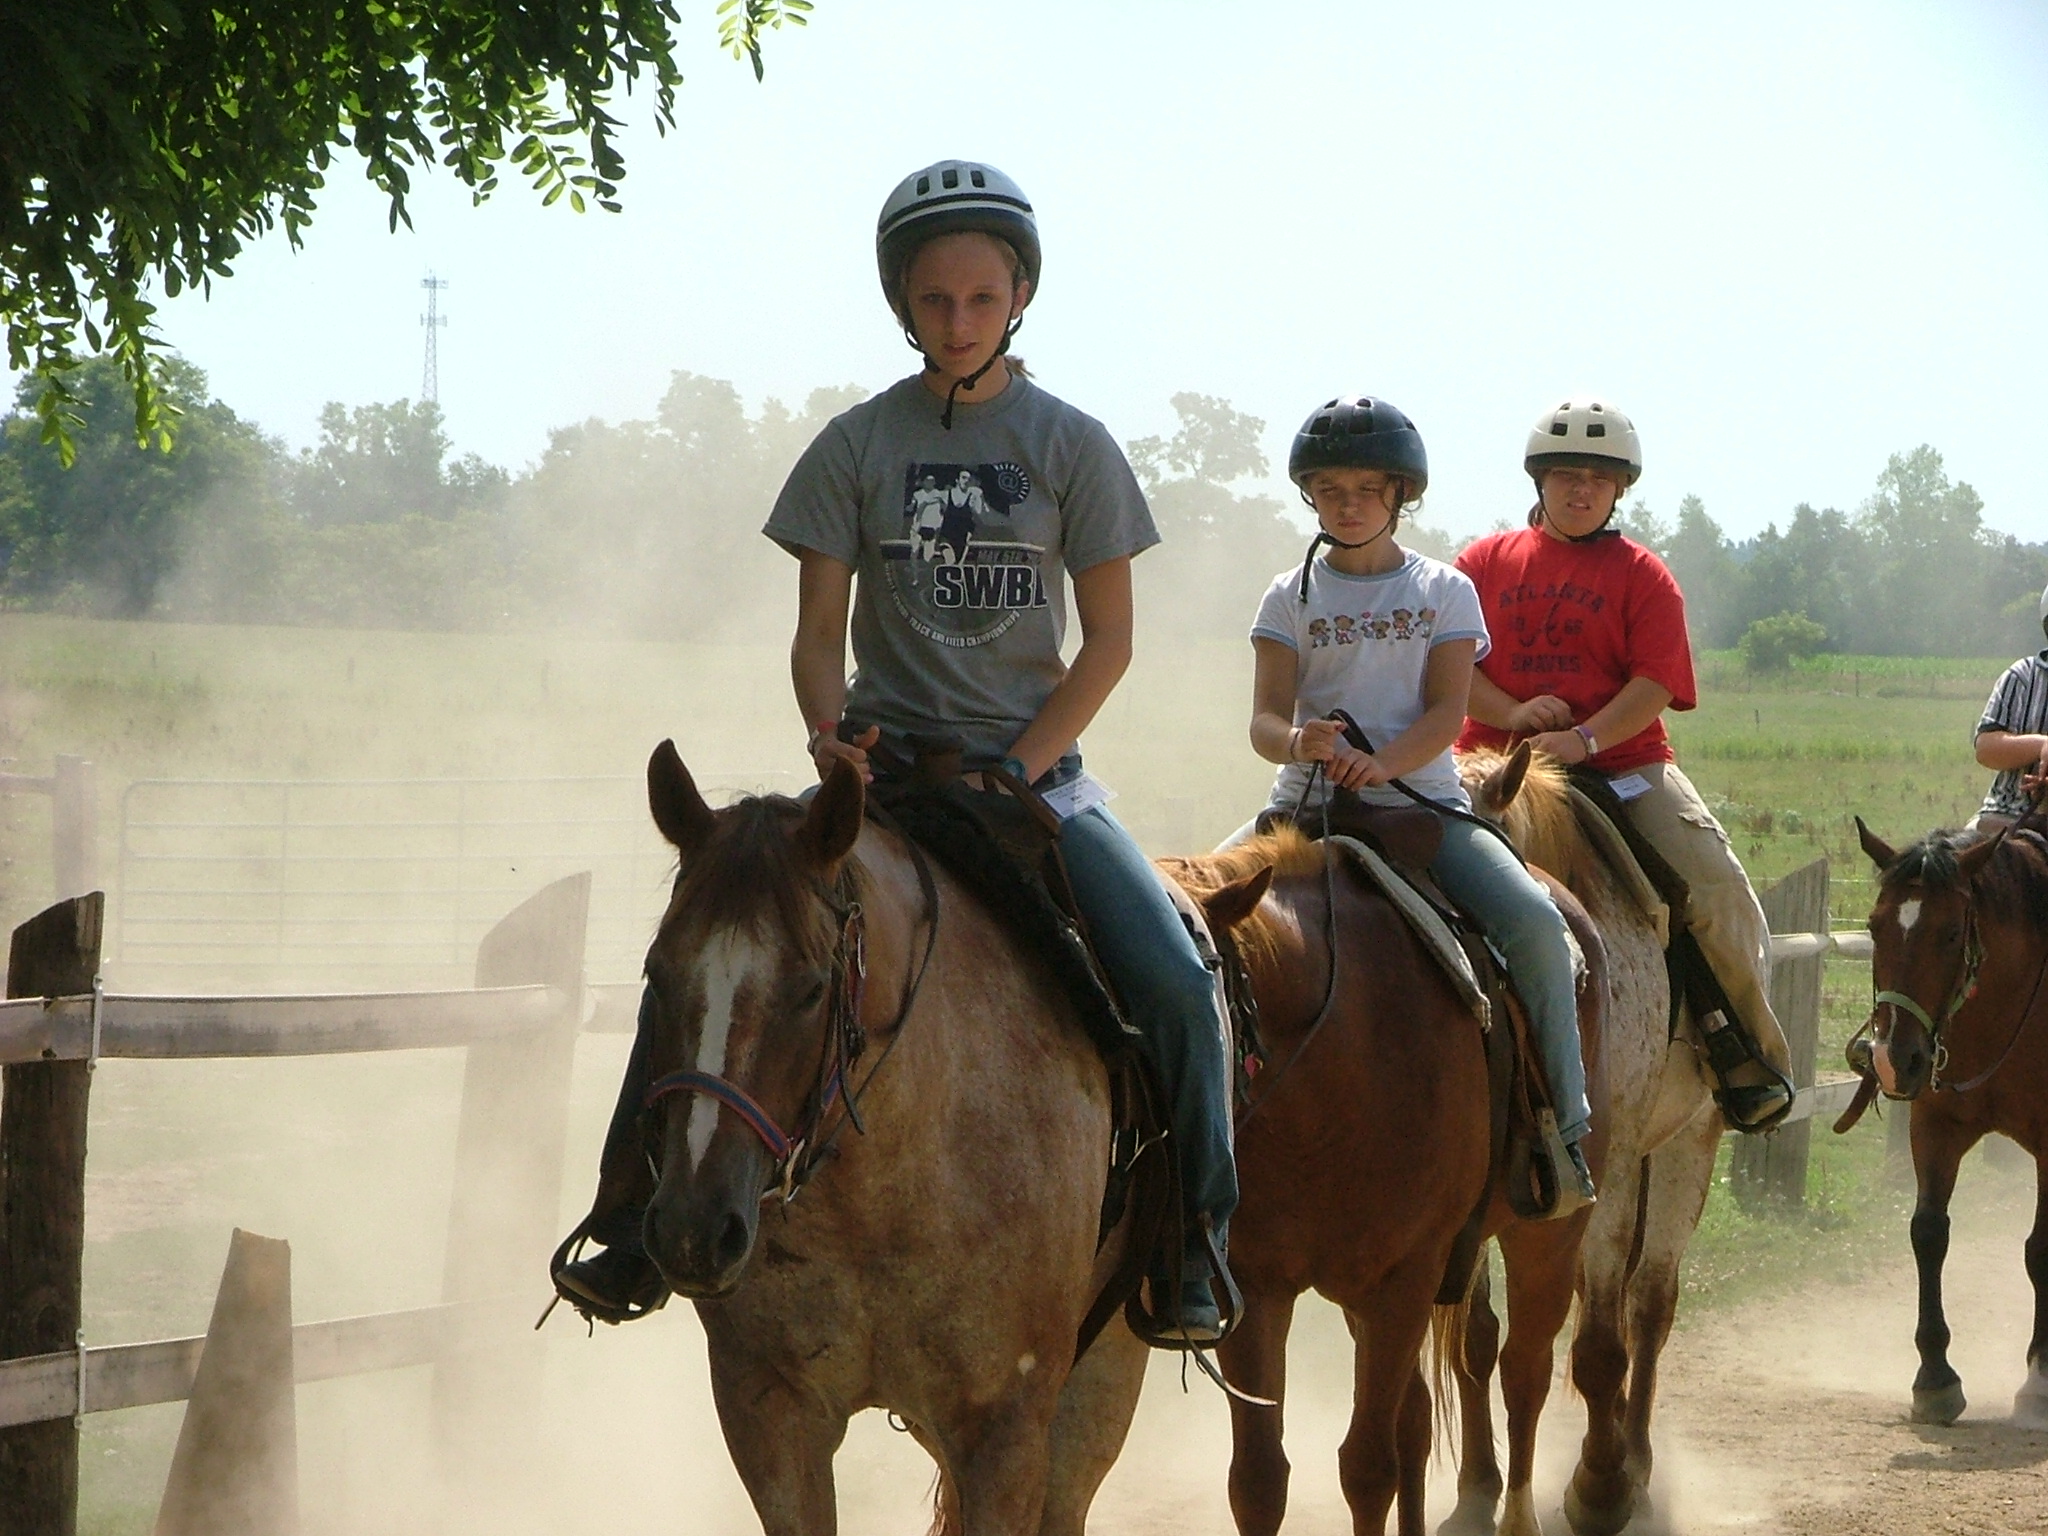 Kids on dusty trail ride